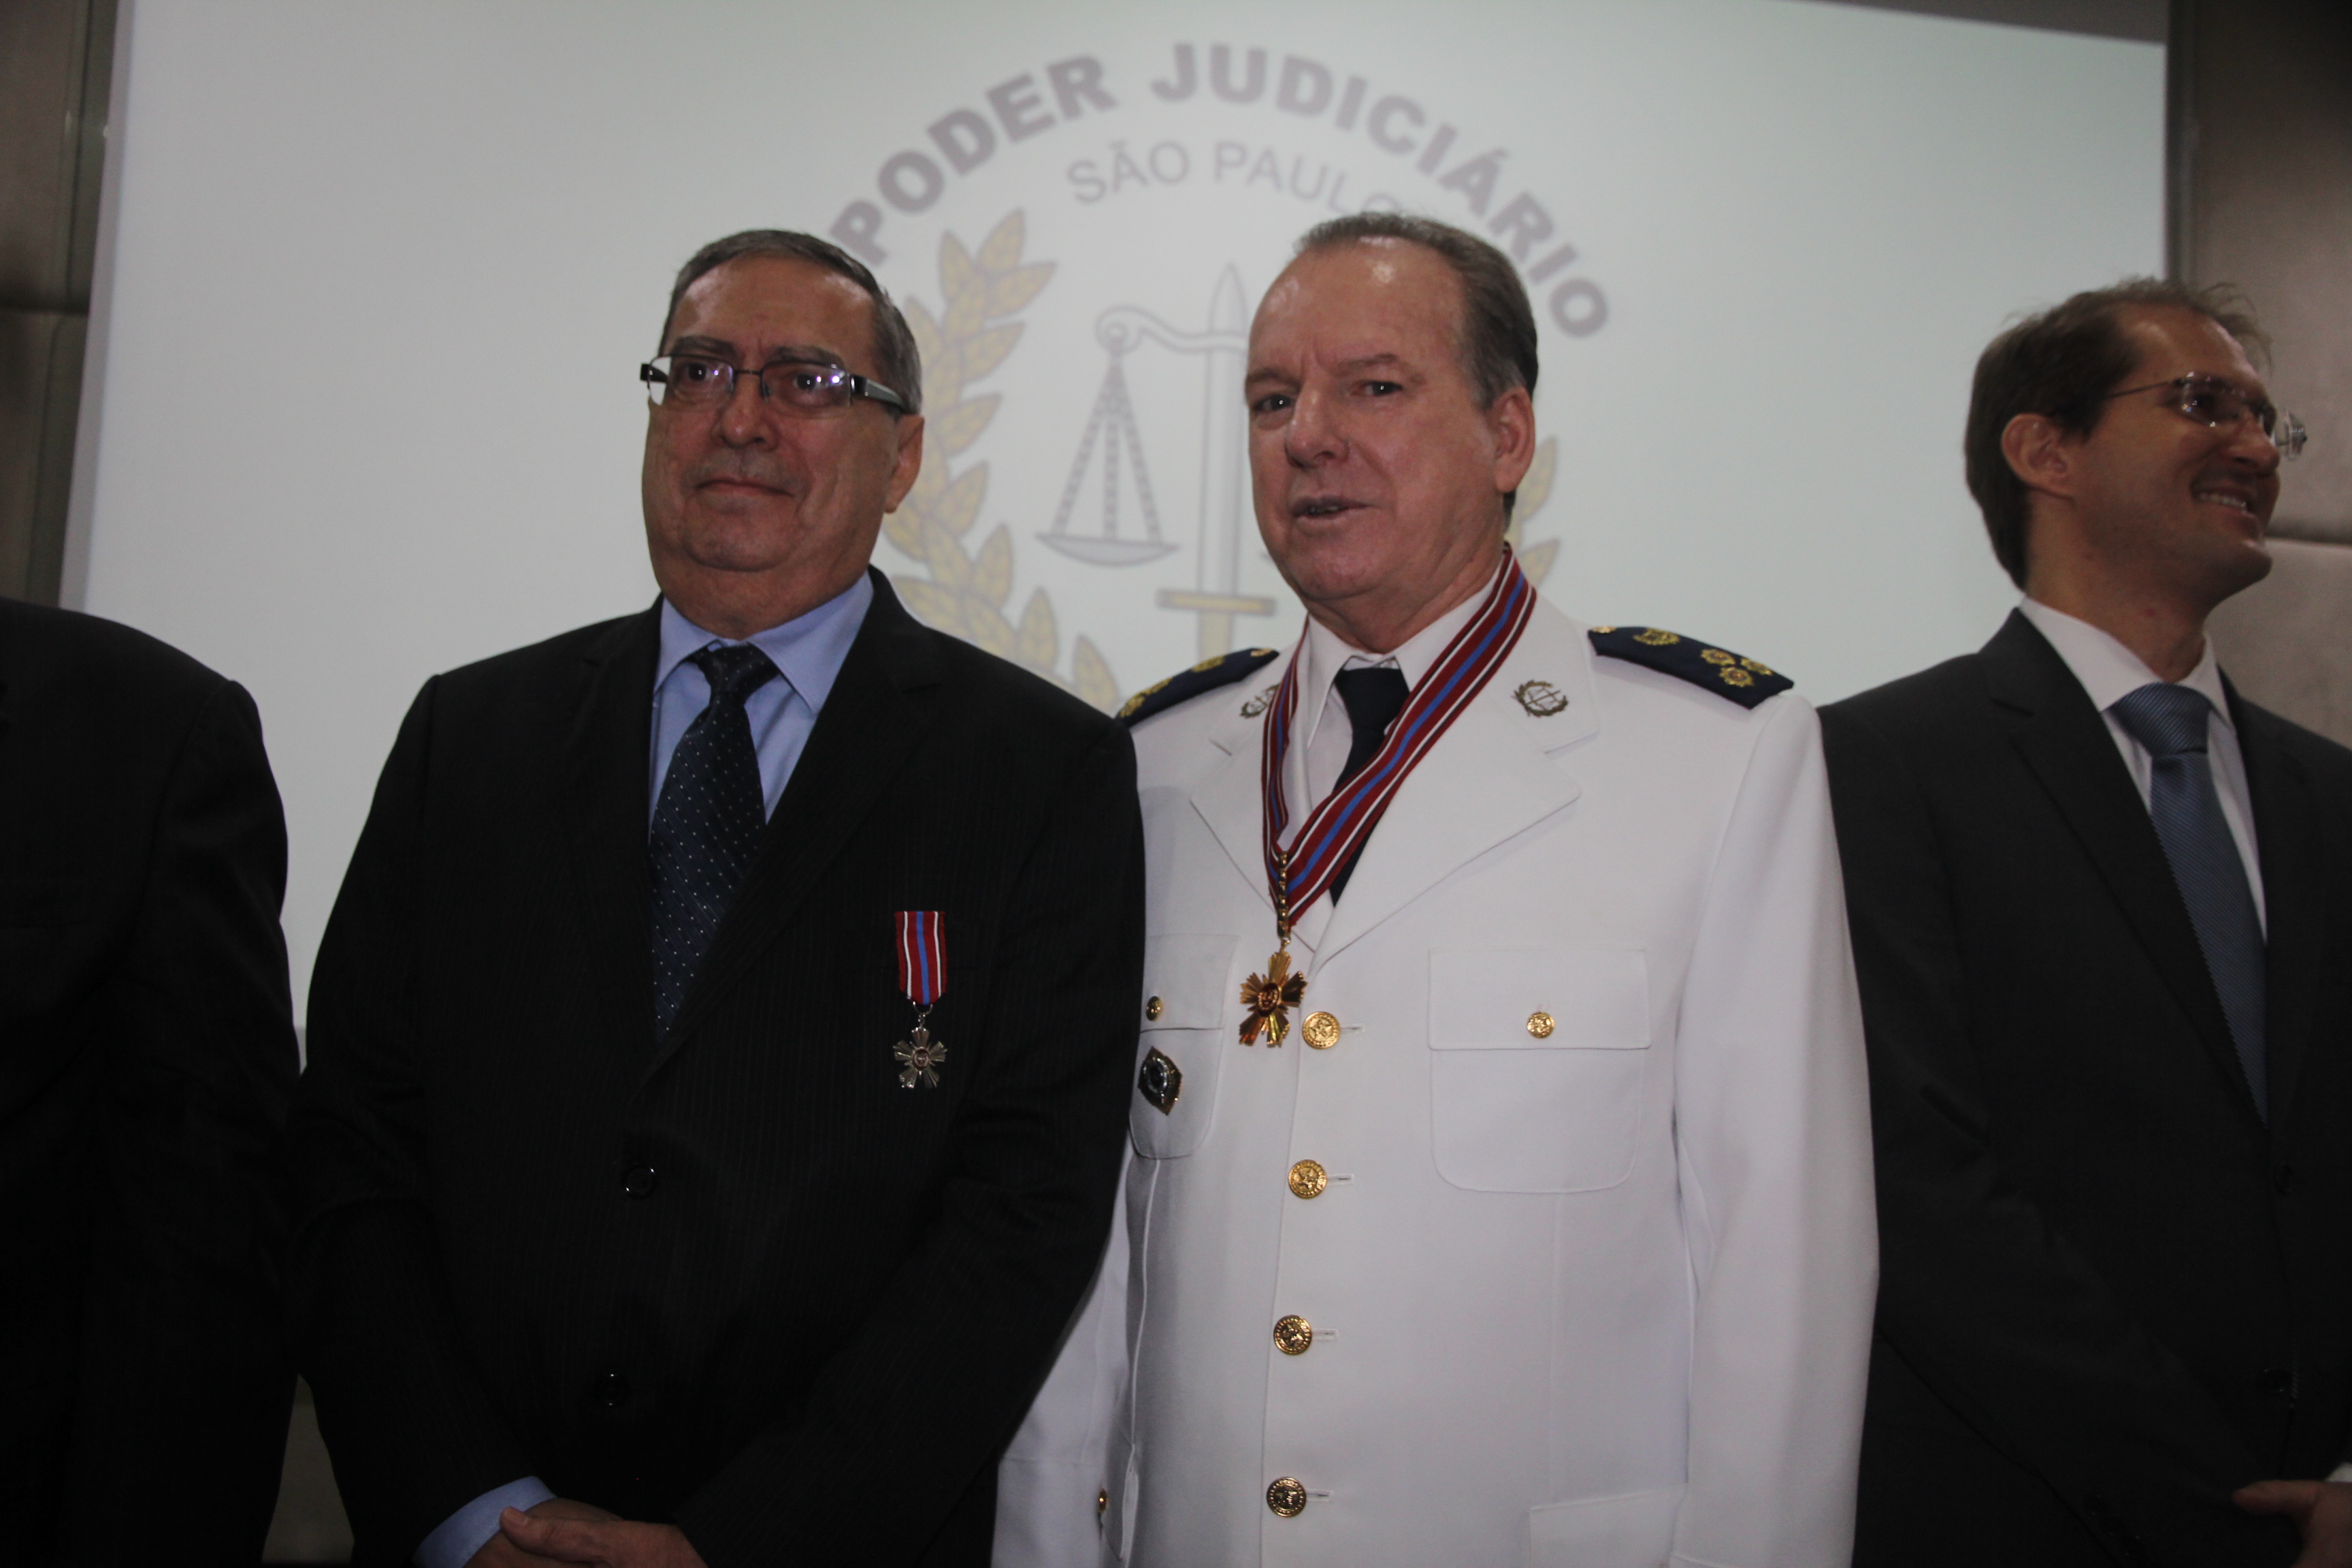 Promotoria de Justiça de São Joaquim da Barra - MPSP